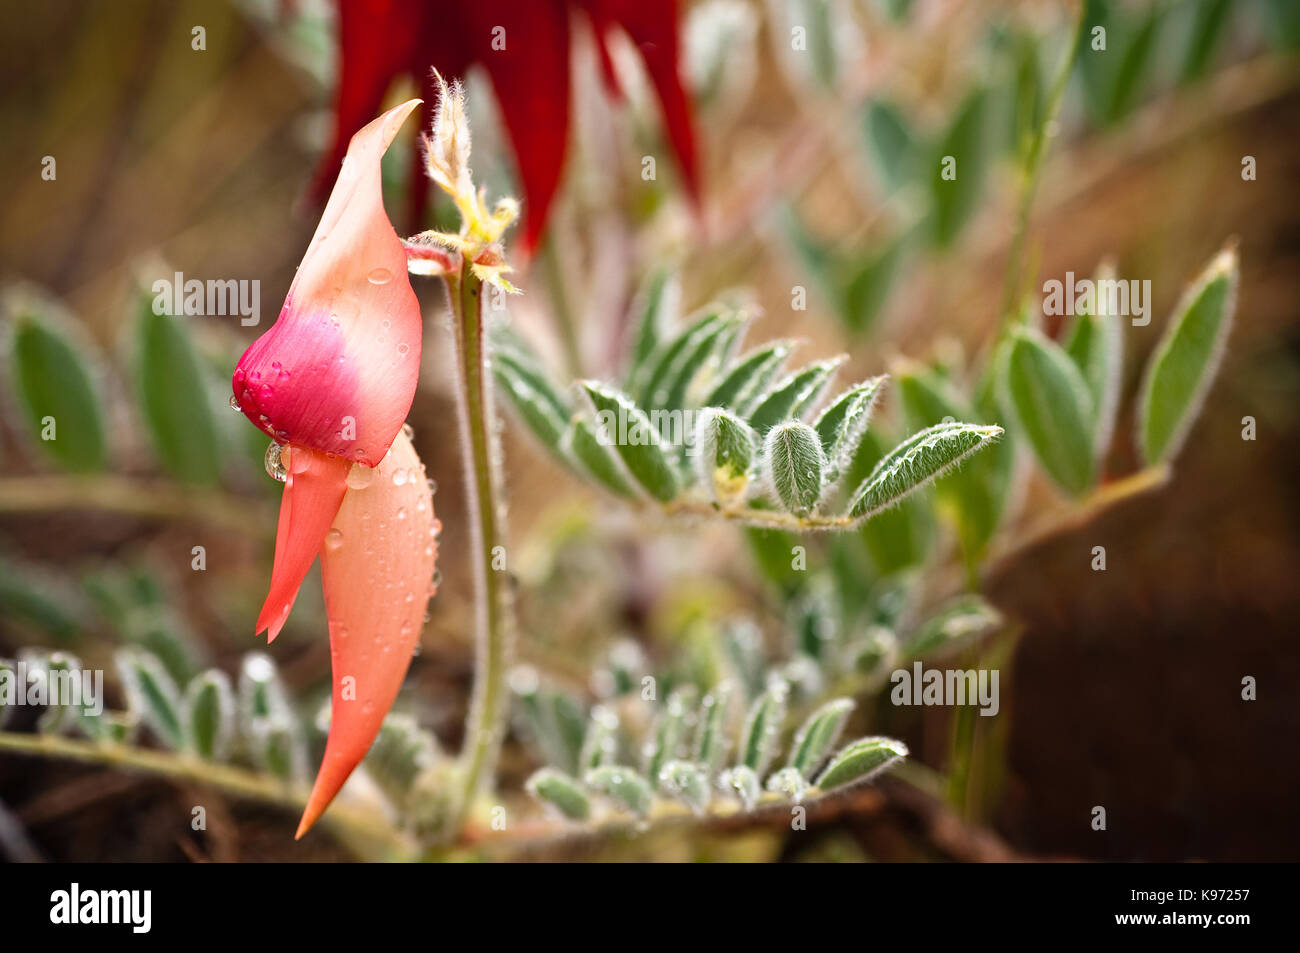 Versión de color rosa pálido a rojo profundo normalmente Sturt's Desert Pea, espectacular flor nativa de las regiones semiáridas de Australia. Foto de stock